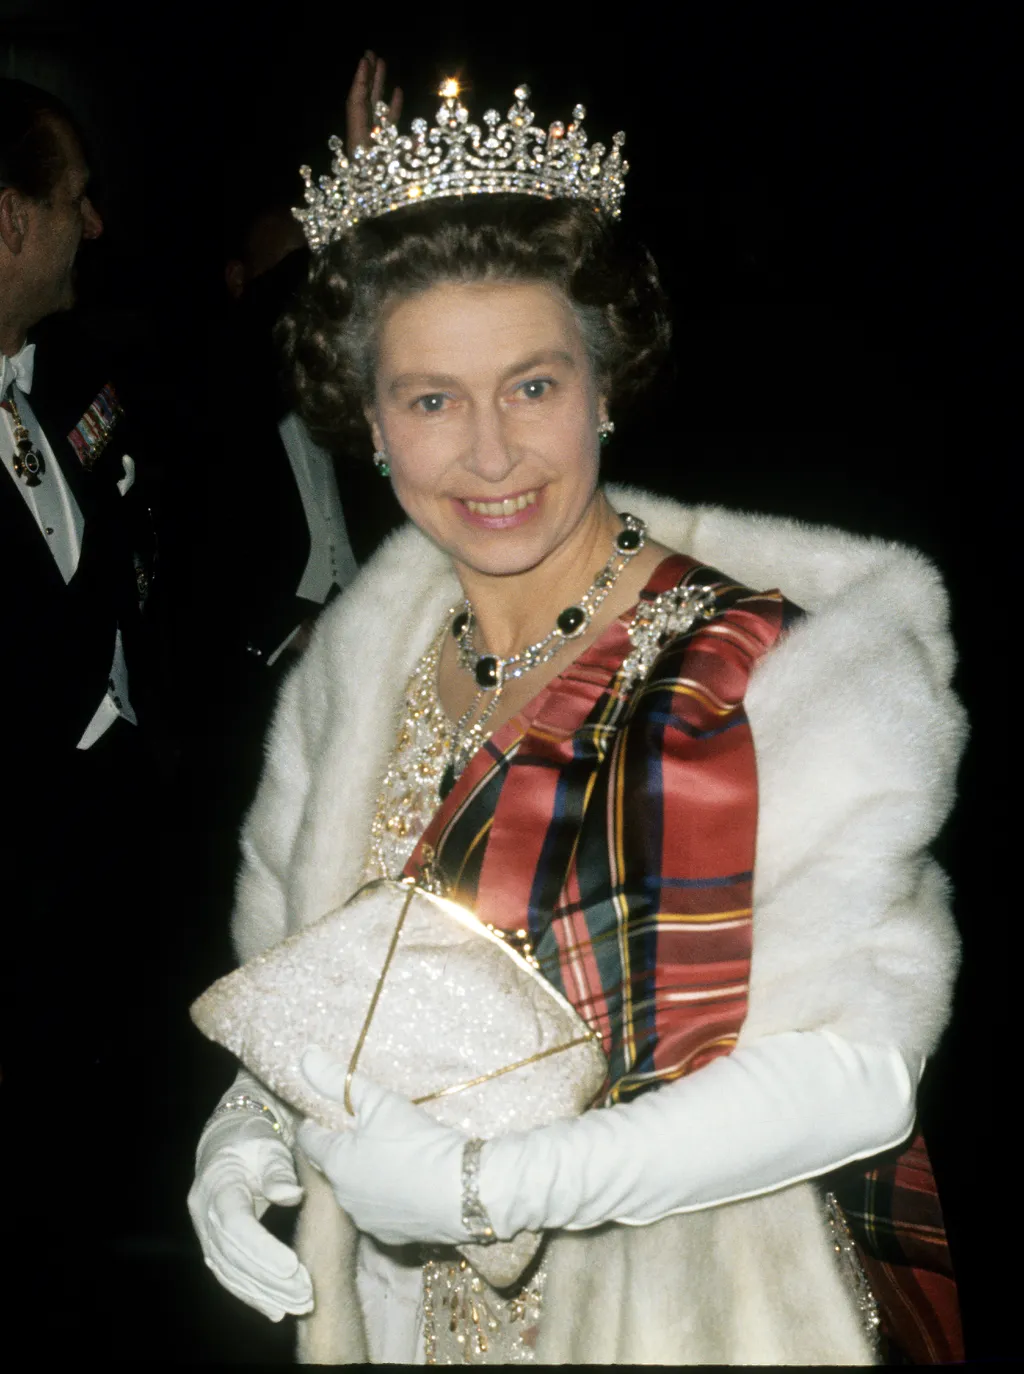 Erzsébet királynő, II. Erzsébet királynő, halála, meghalt, ruha, divat, stílus 